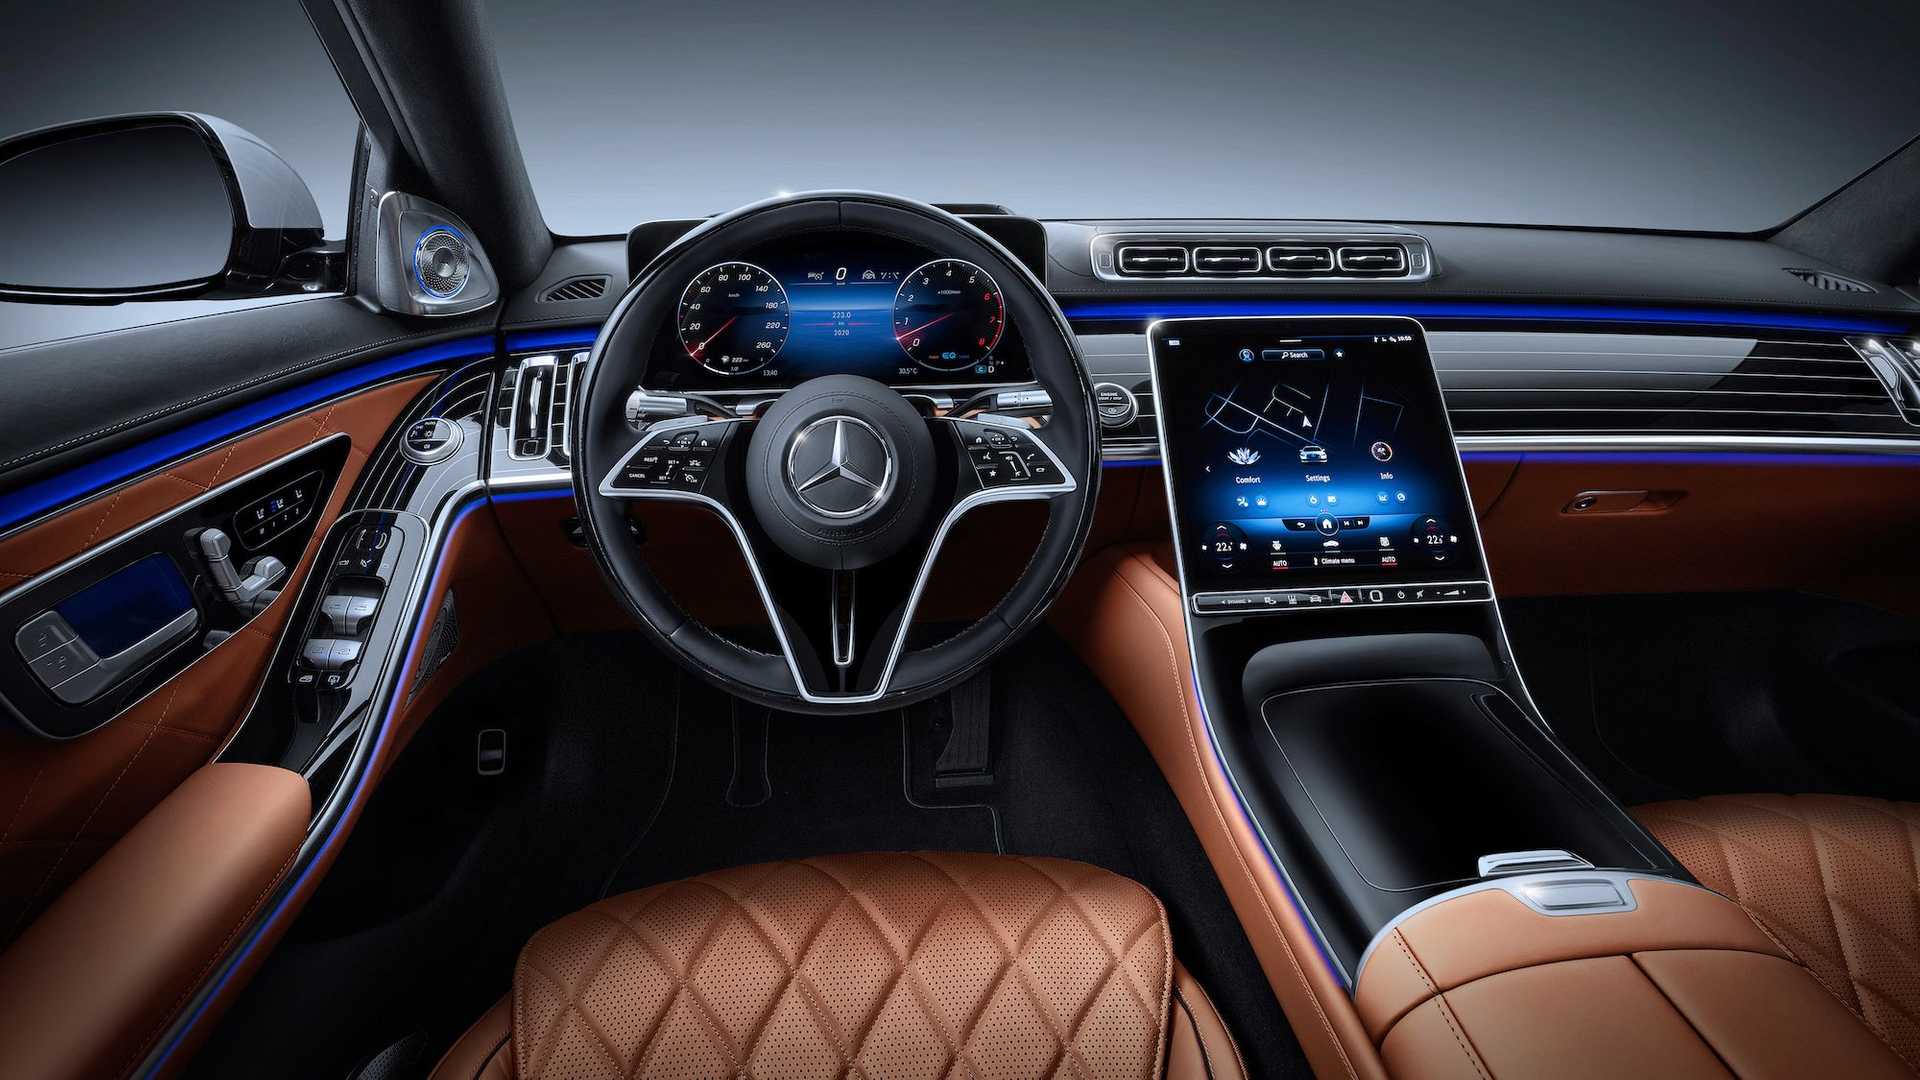  Mercedes tự tin doanh số S-Class sẽ tăng trưởng tốt.